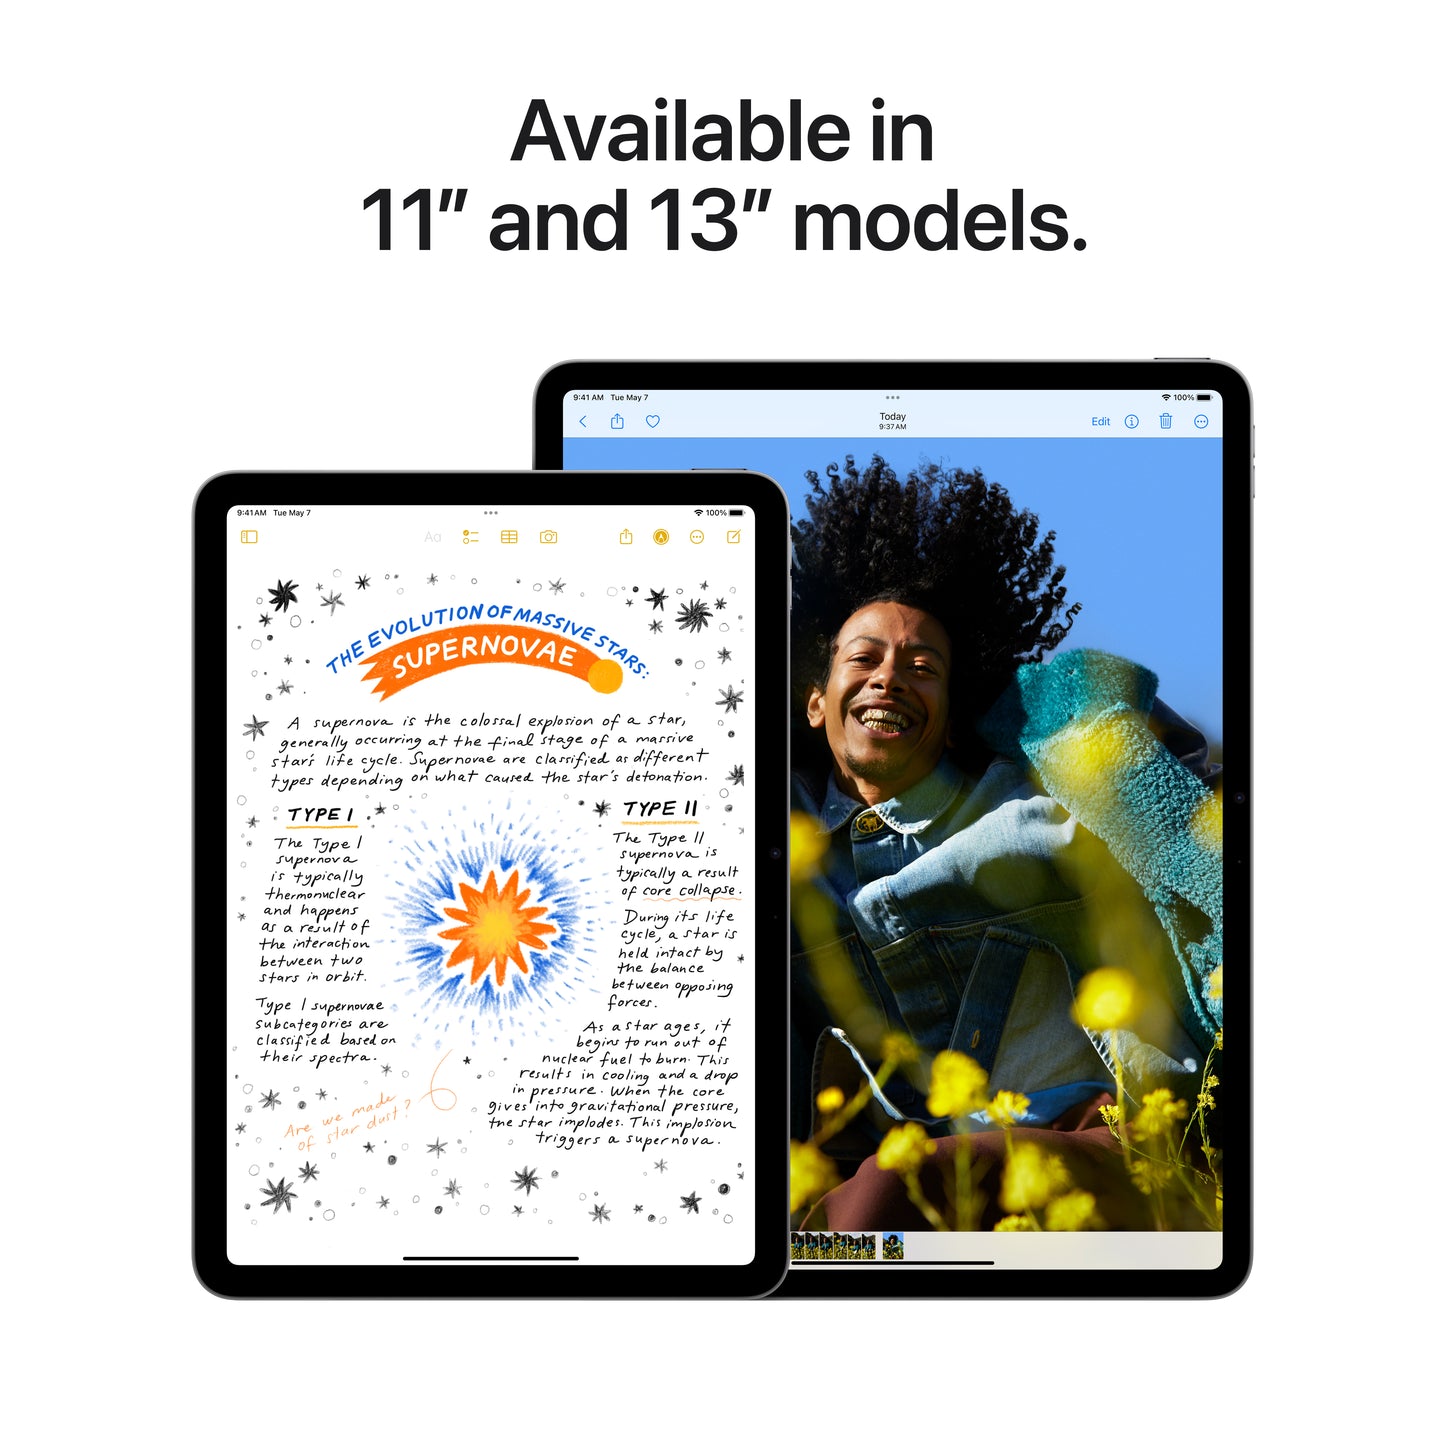 Apple 13-in iPad Air (M2) Wi-Fi + Cellular 512GB - Starlight - MV723LL/A (May 2024)